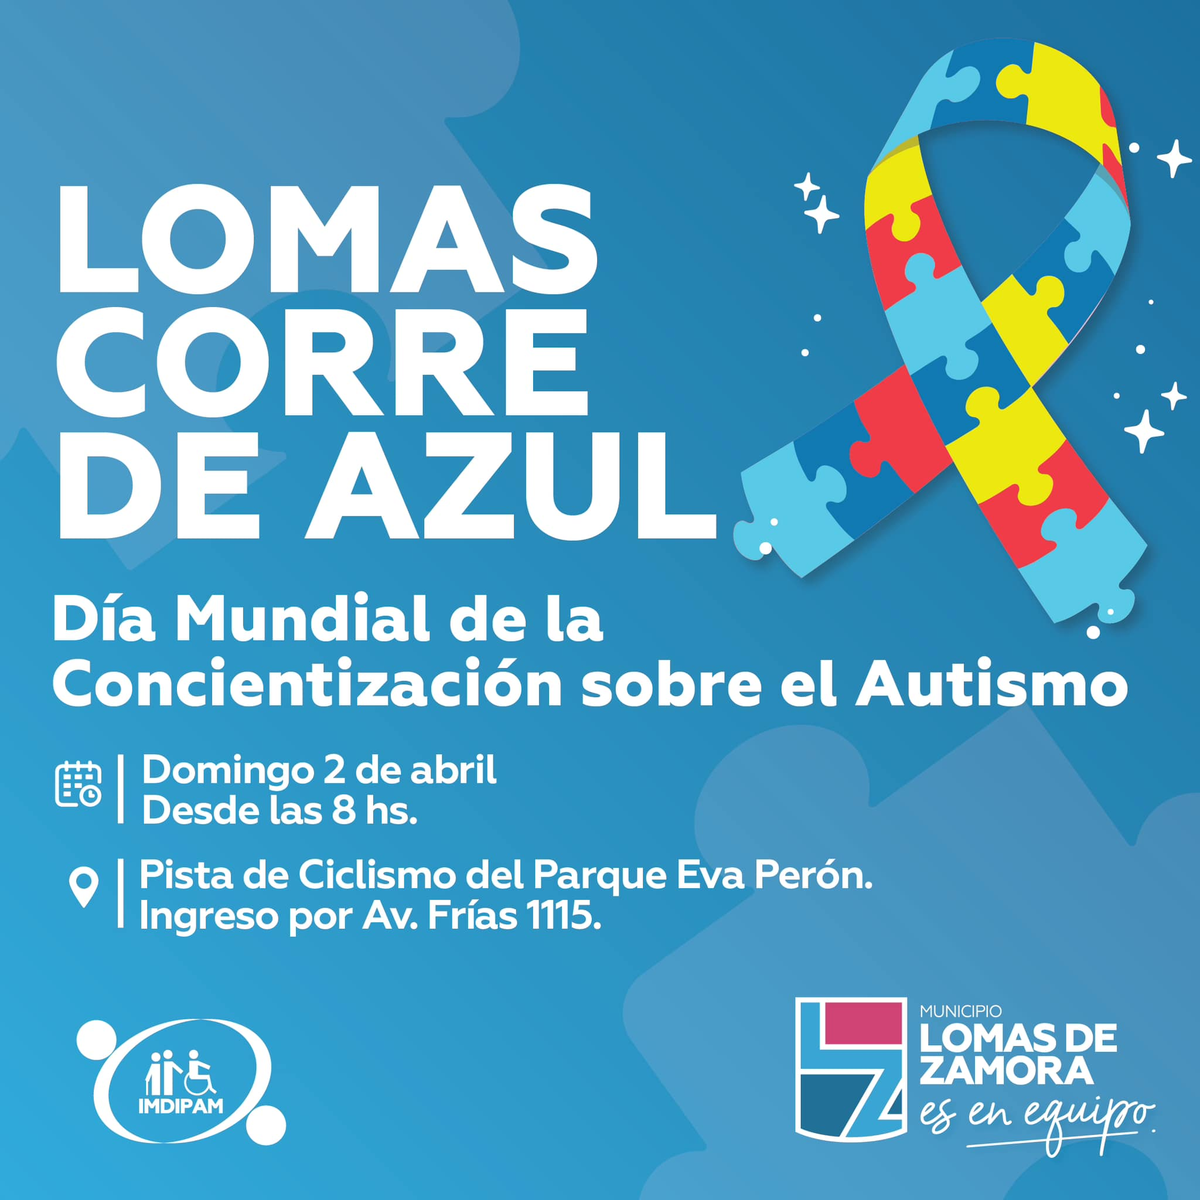 El evento se llevará adelante el próximo domingo 2 de abril en Lomas de Zamora.